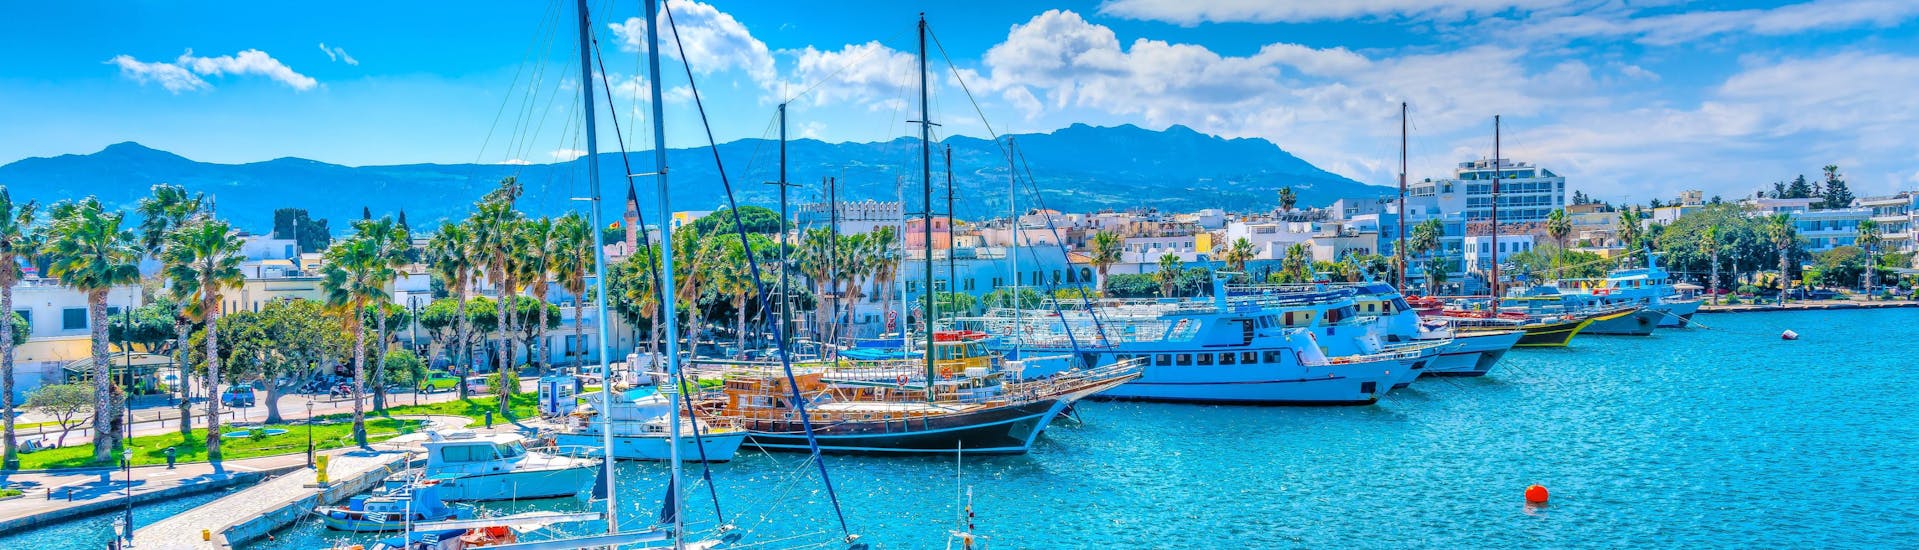 Bild des Hafens von Kos, Griechenland, einem beliebten Ziel für Bootsfahrten.